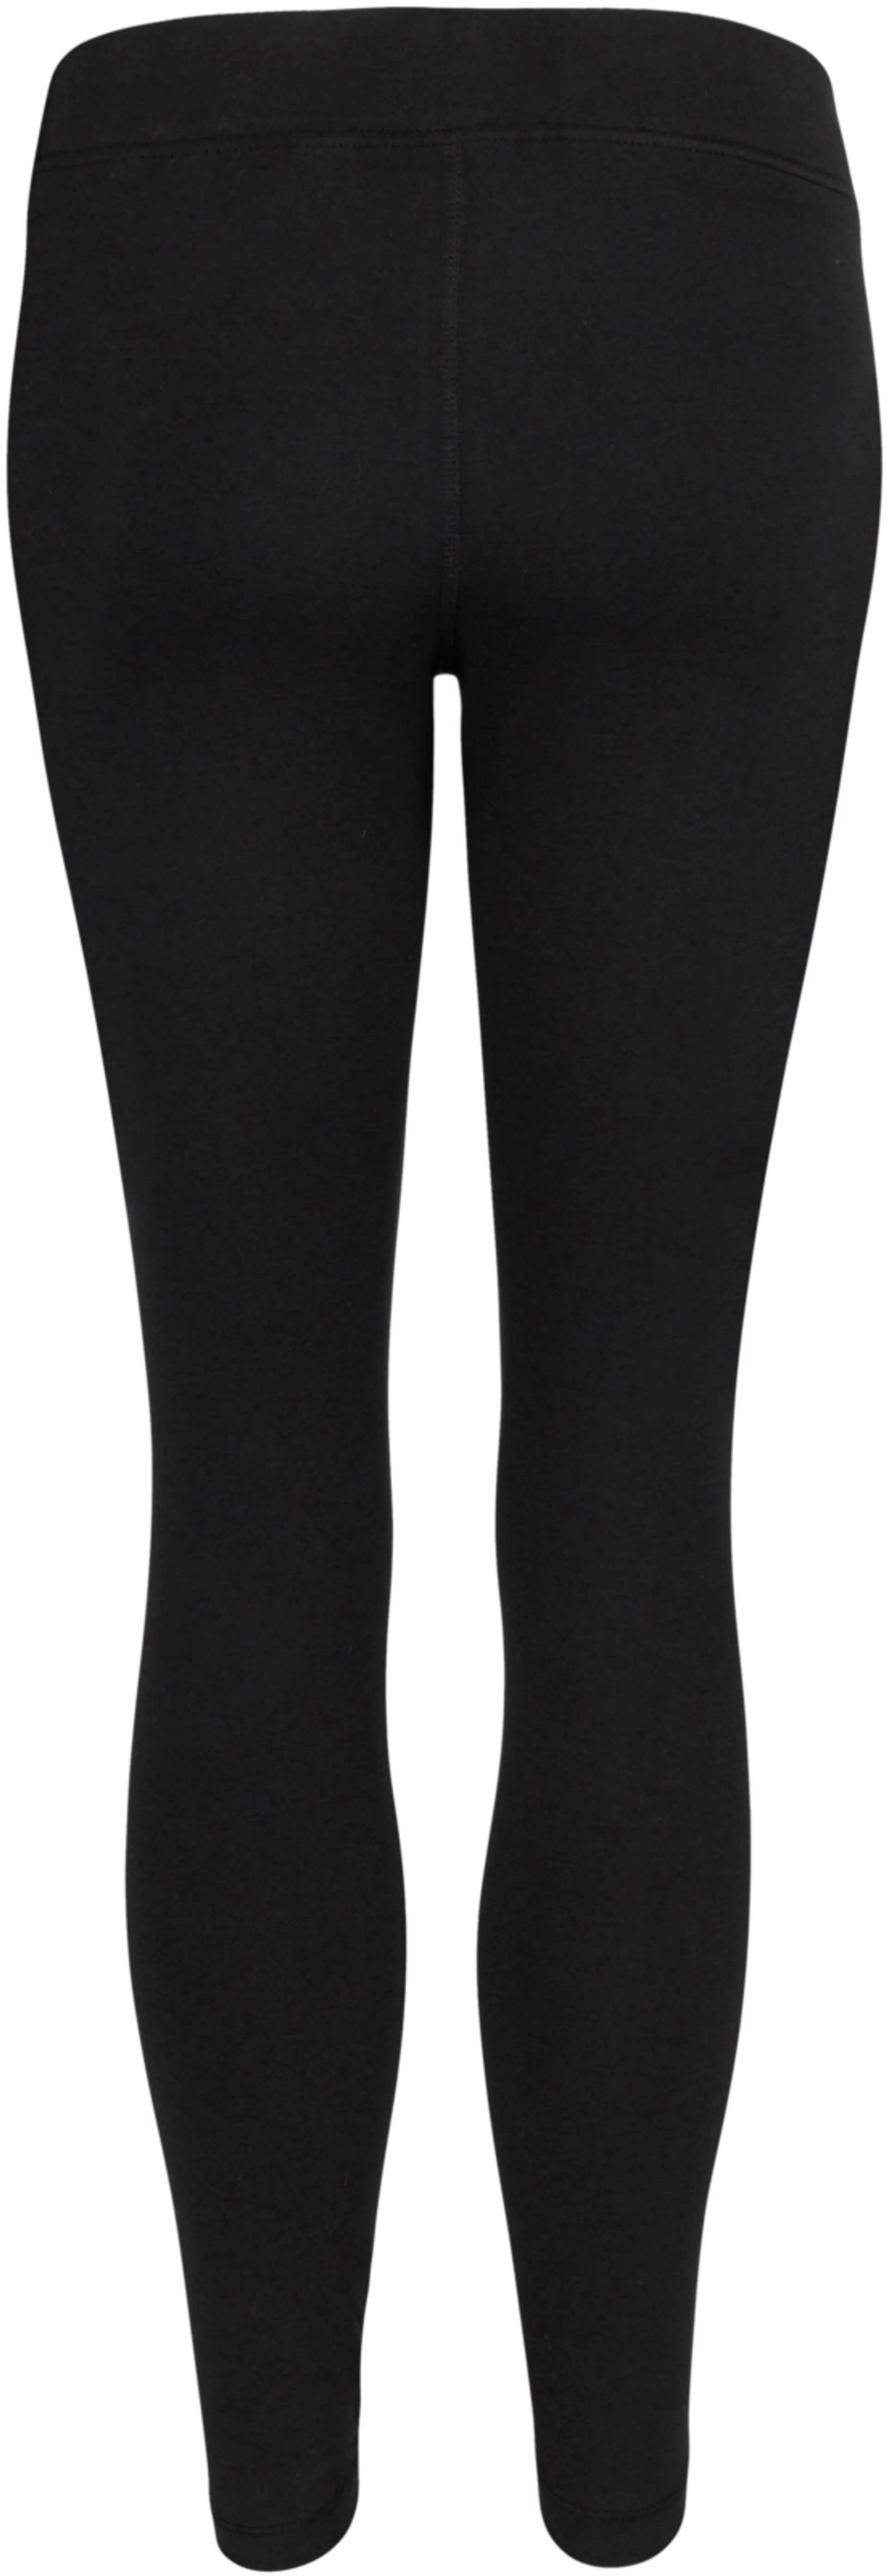 Nike naisten leggingsit CZ8532-010 - MUSTA - 3